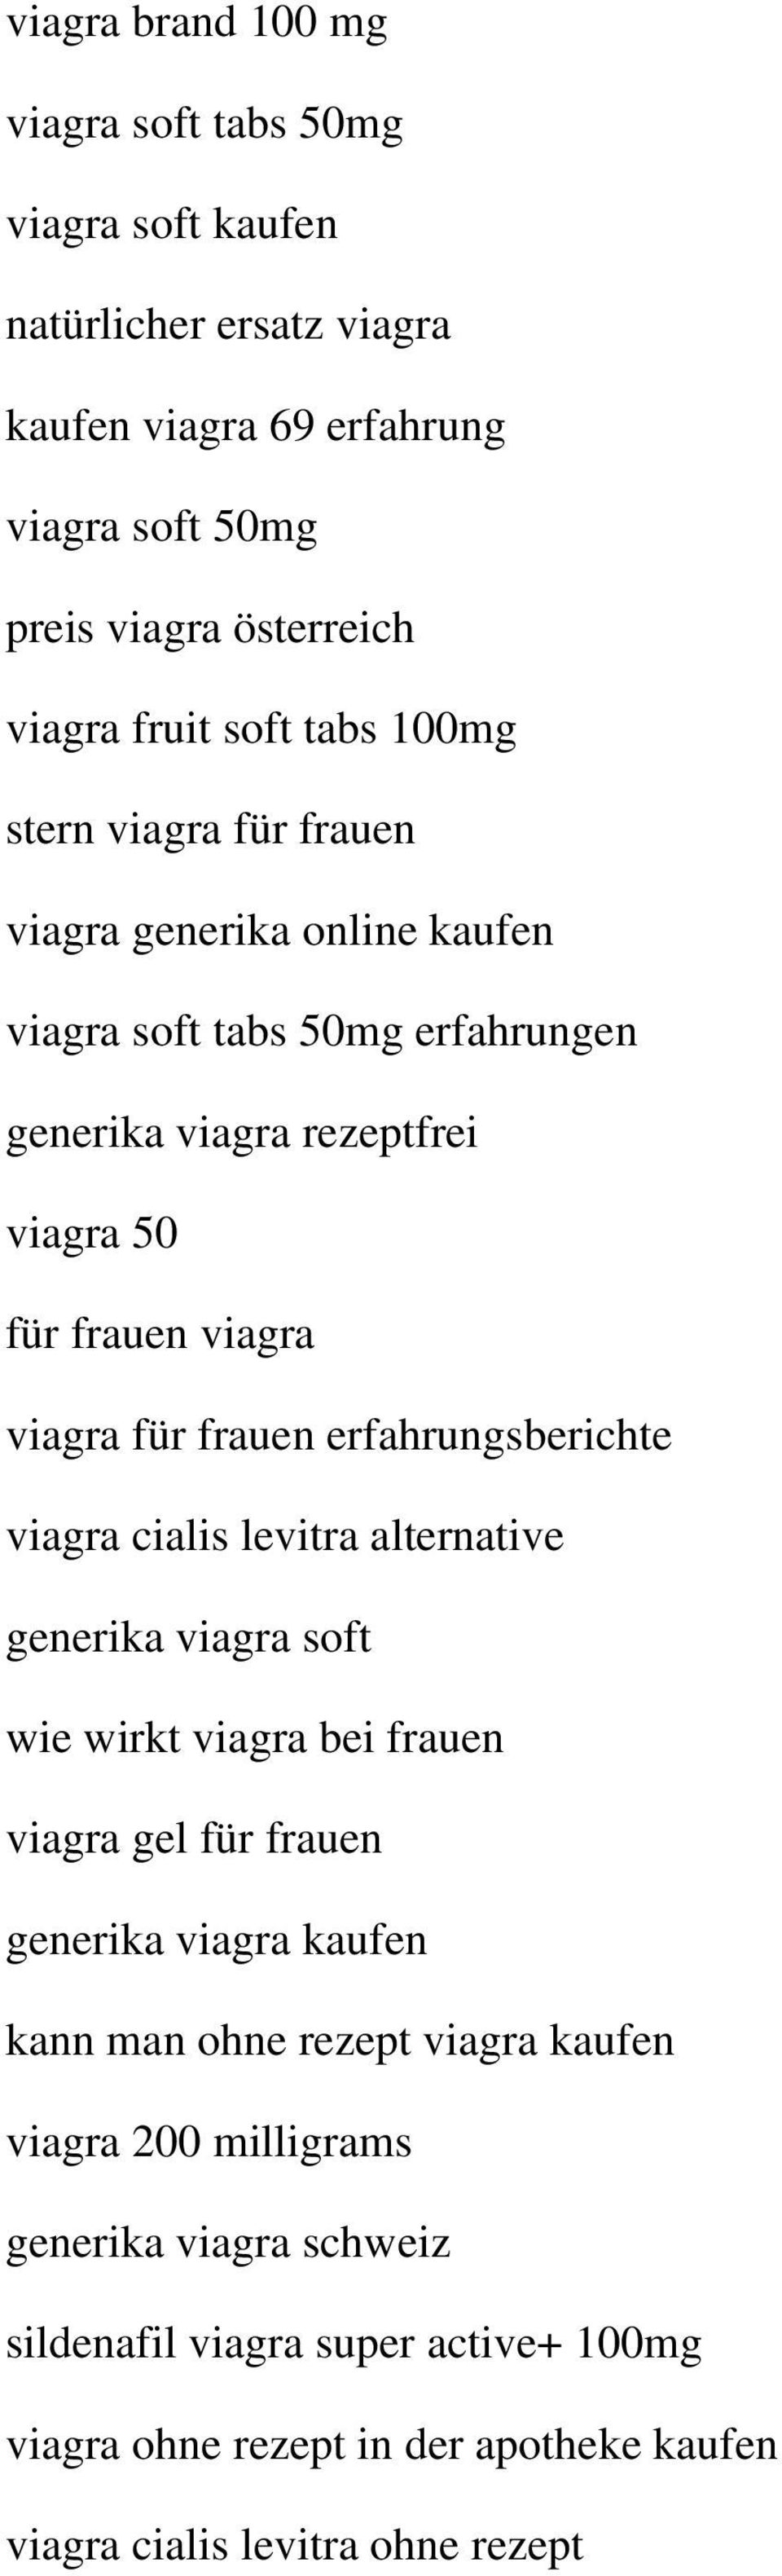 frauen erfahrungsberichte viagra cialis levitra alternative generika viagra soft wie wirkt viagra bei frauen viagra gel für frauen generika viagra kaufen kann man ohne